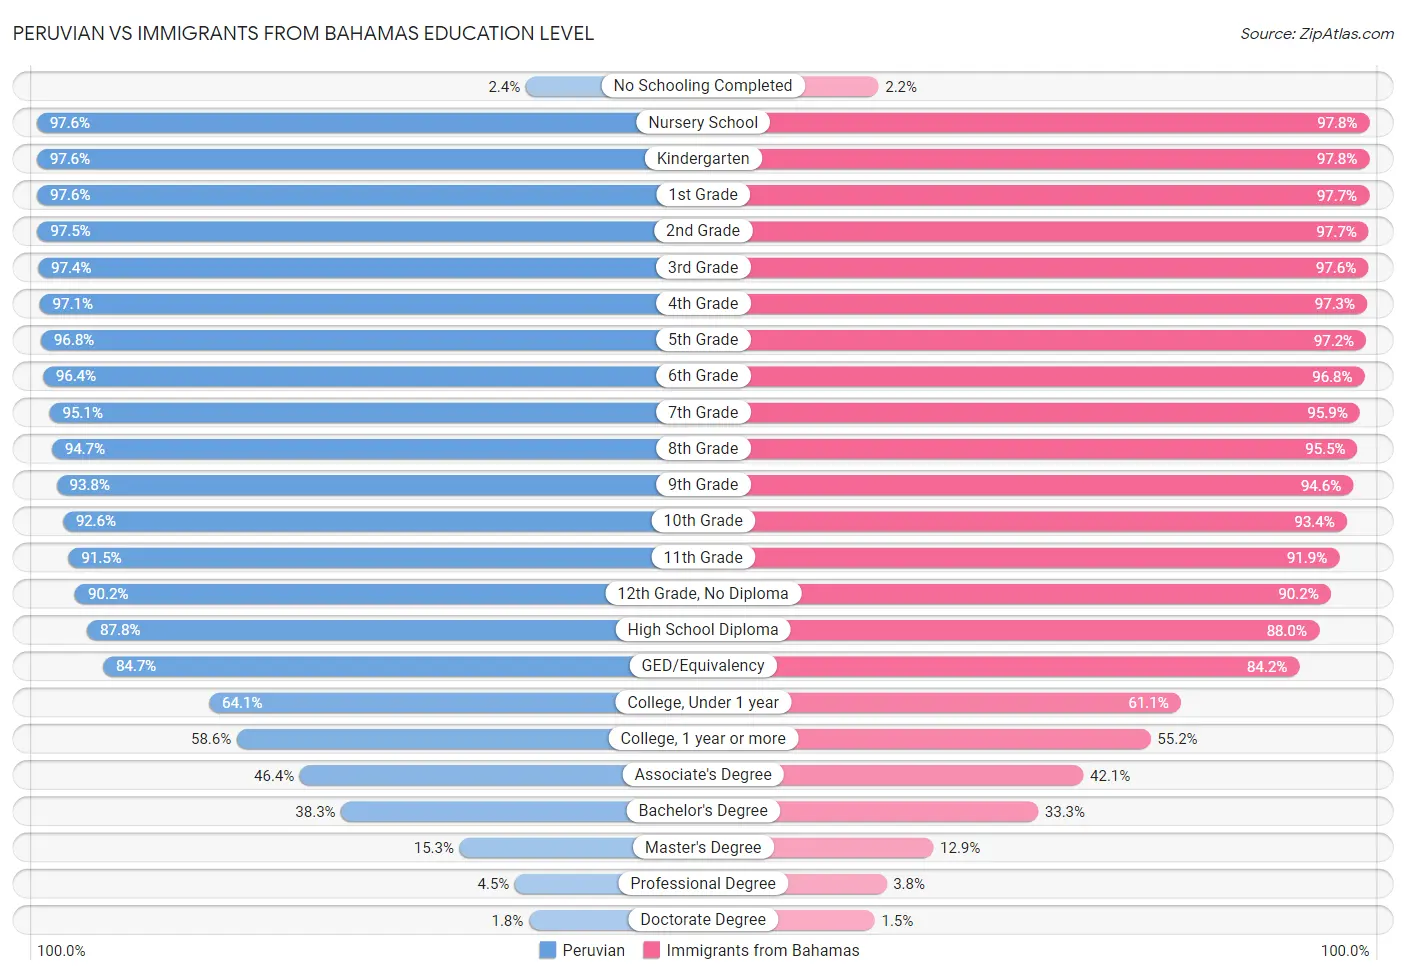 Peruvian vs Immigrants from Bahamas Education Level